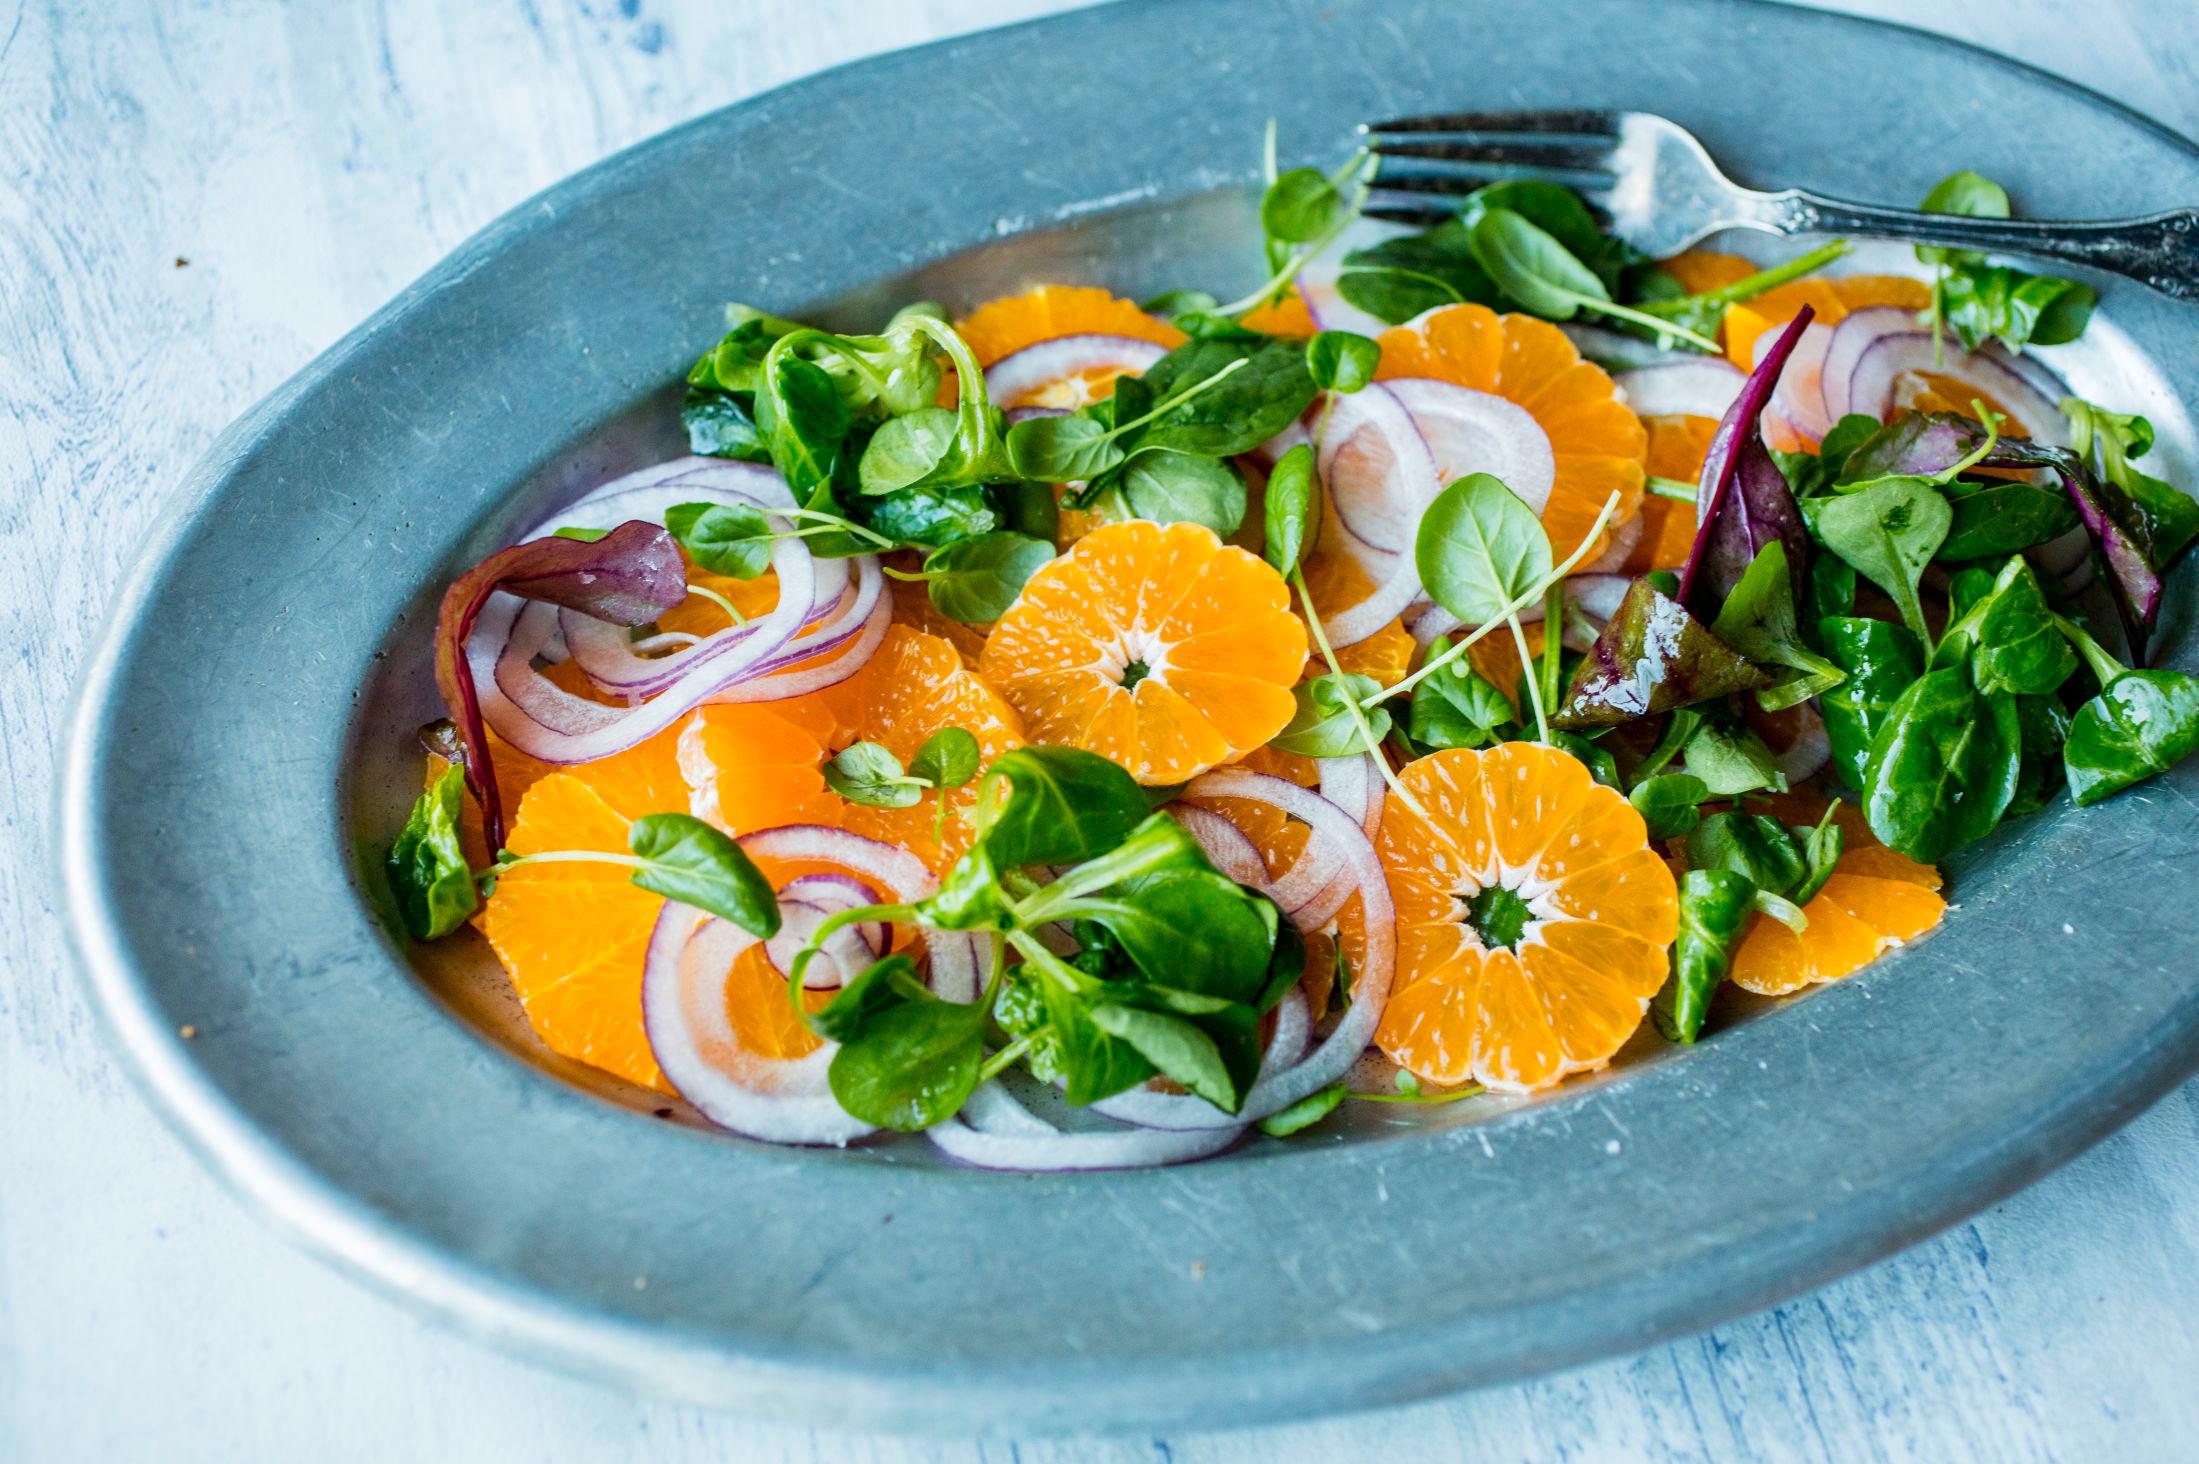 FRISK SALAT: Klementin i en salat passer som tilbehør til salt julemat eller kjøttretter. Foto: Sara Johannessen / VG